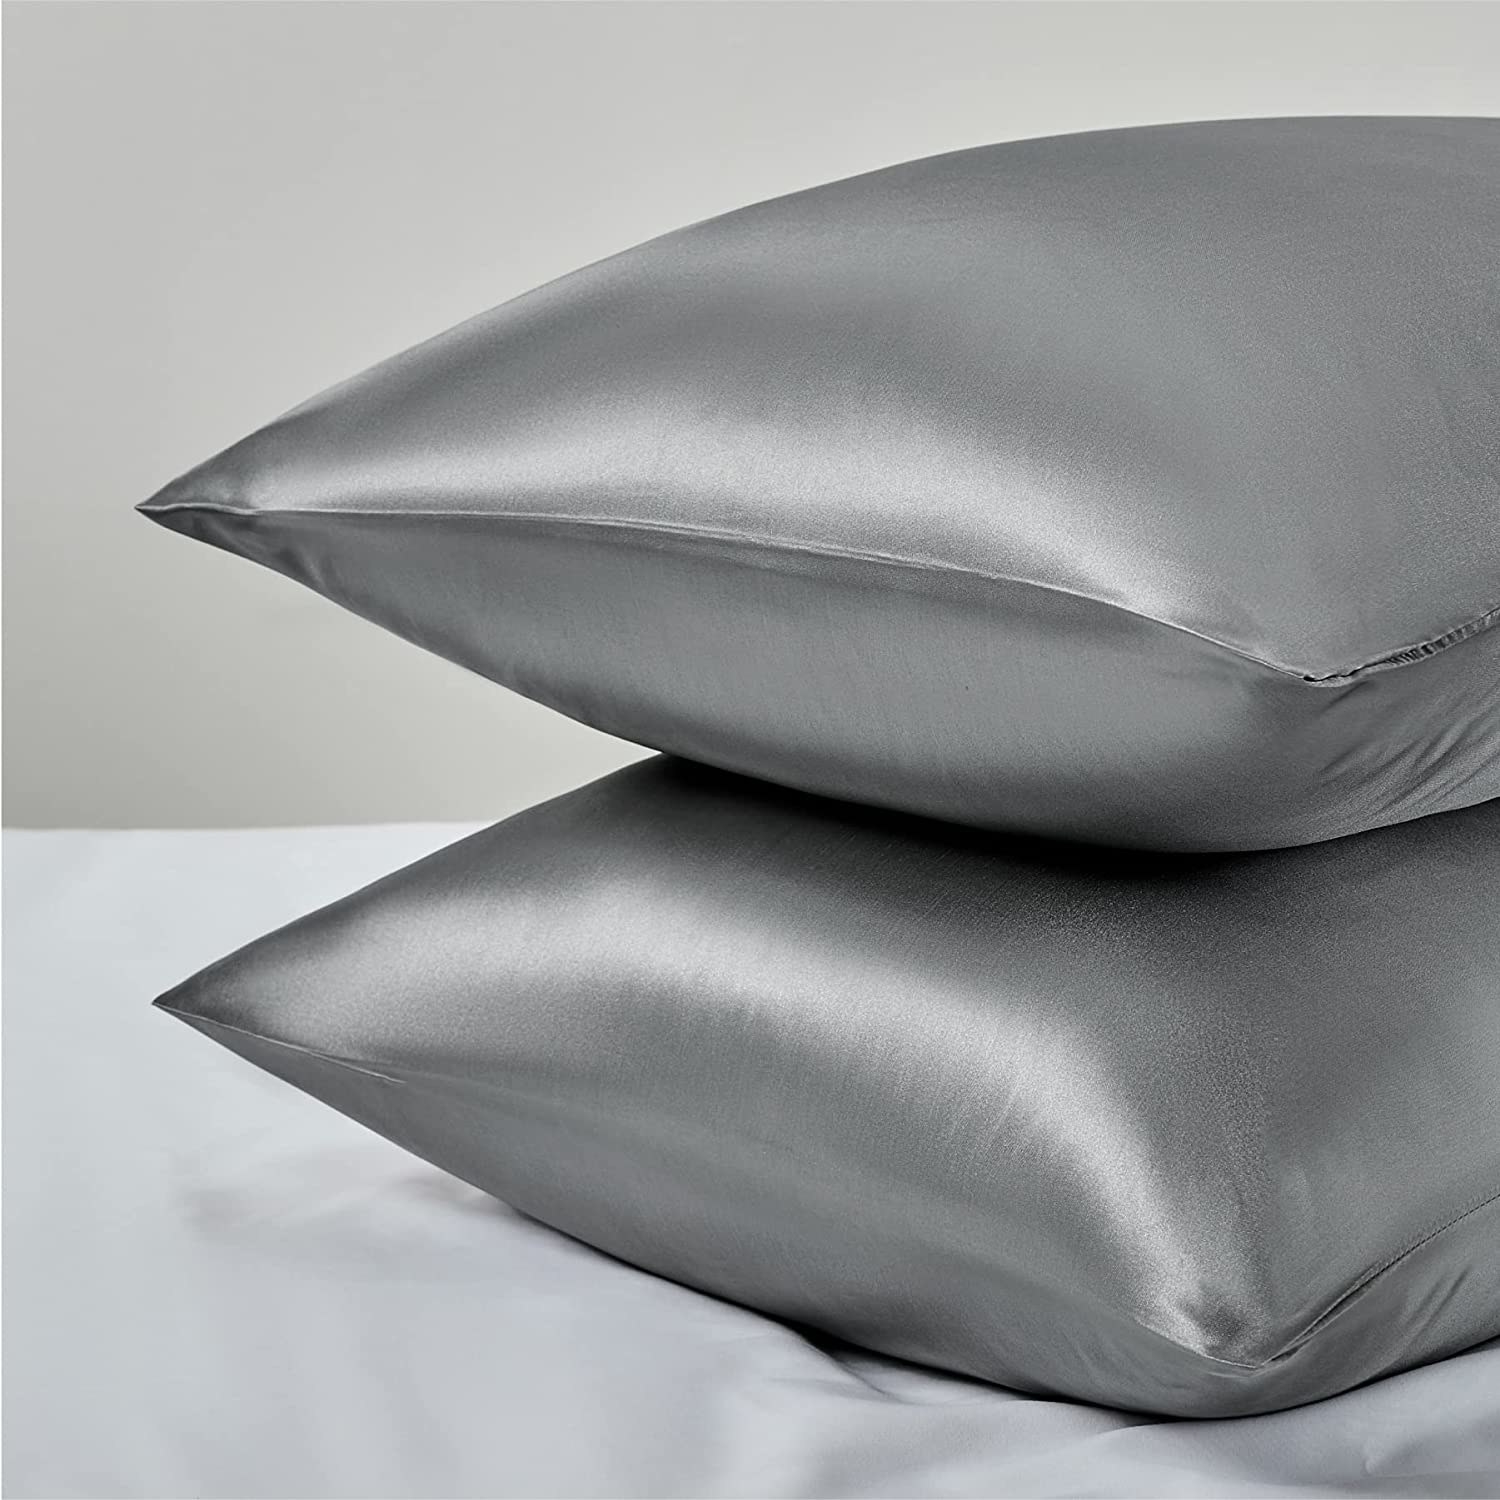 the gray satin pillowcases on two pillows